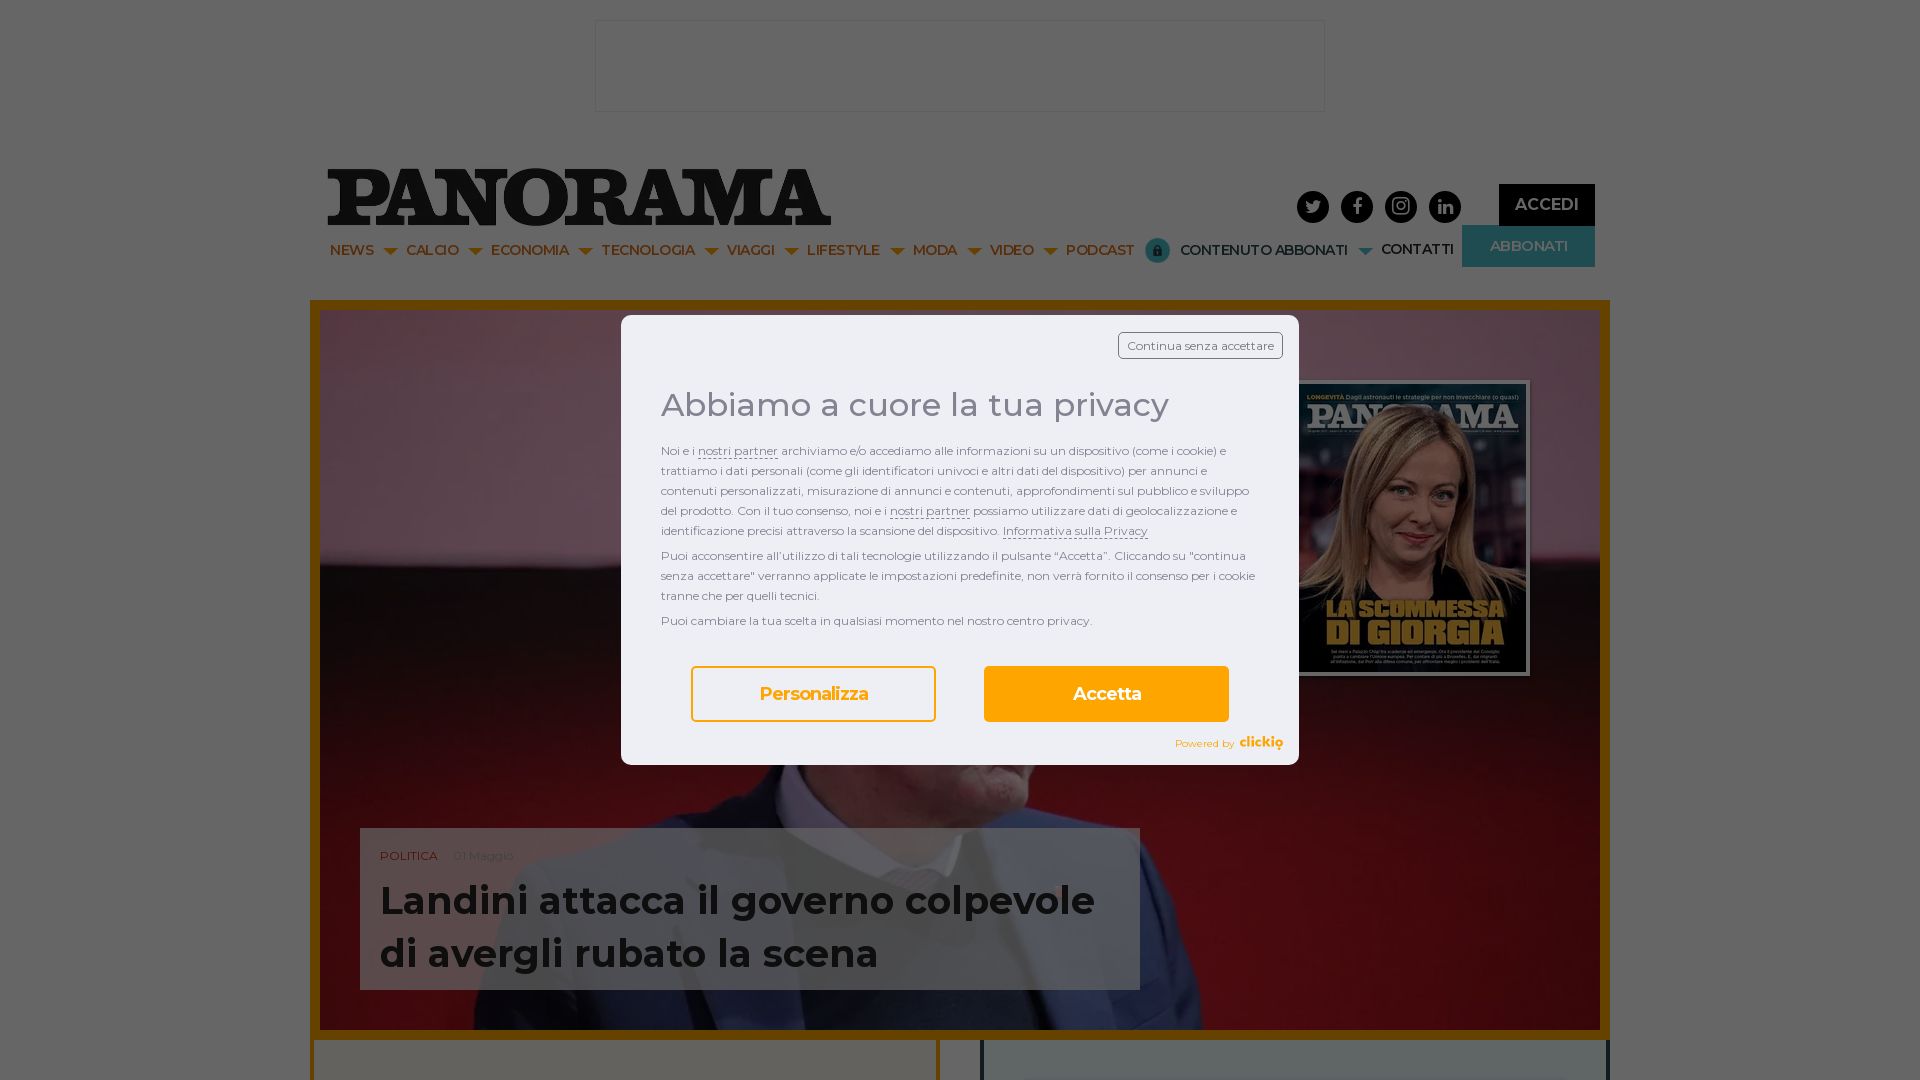 вебсайт panorama.it Є   ONLINE